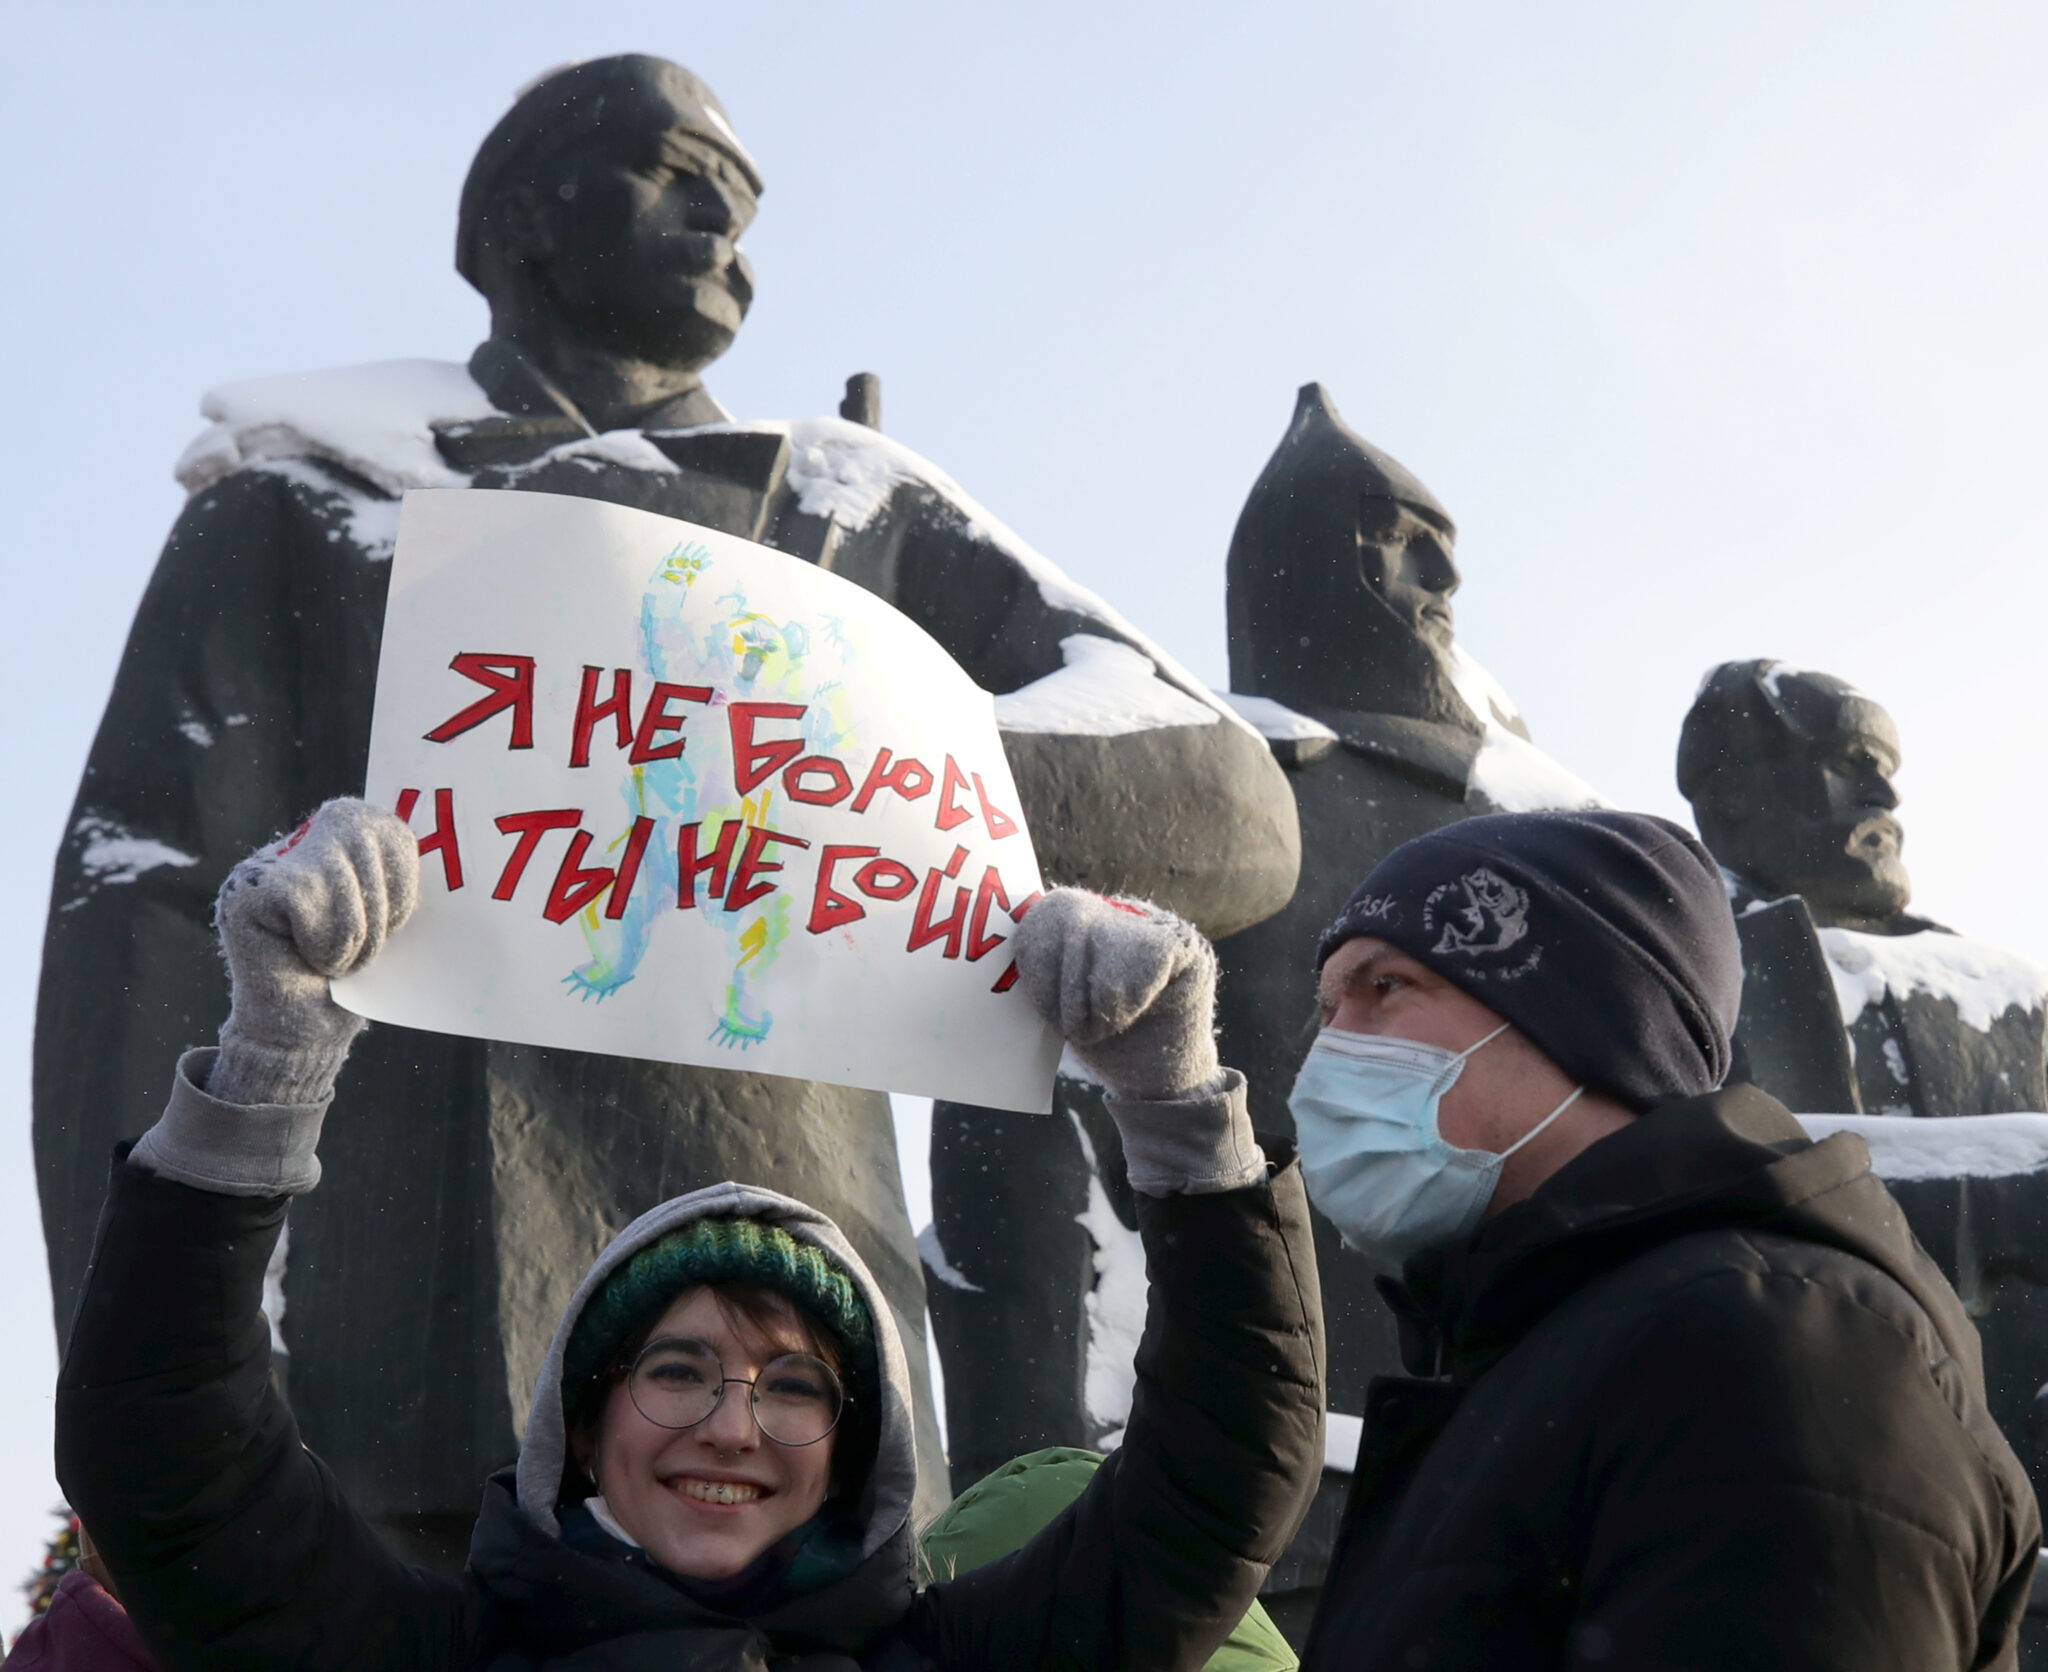 Участники акции в поддержку Навального в Новосибирске. Фото Kirill Kukhmar/TASS/Scanpix/Leta